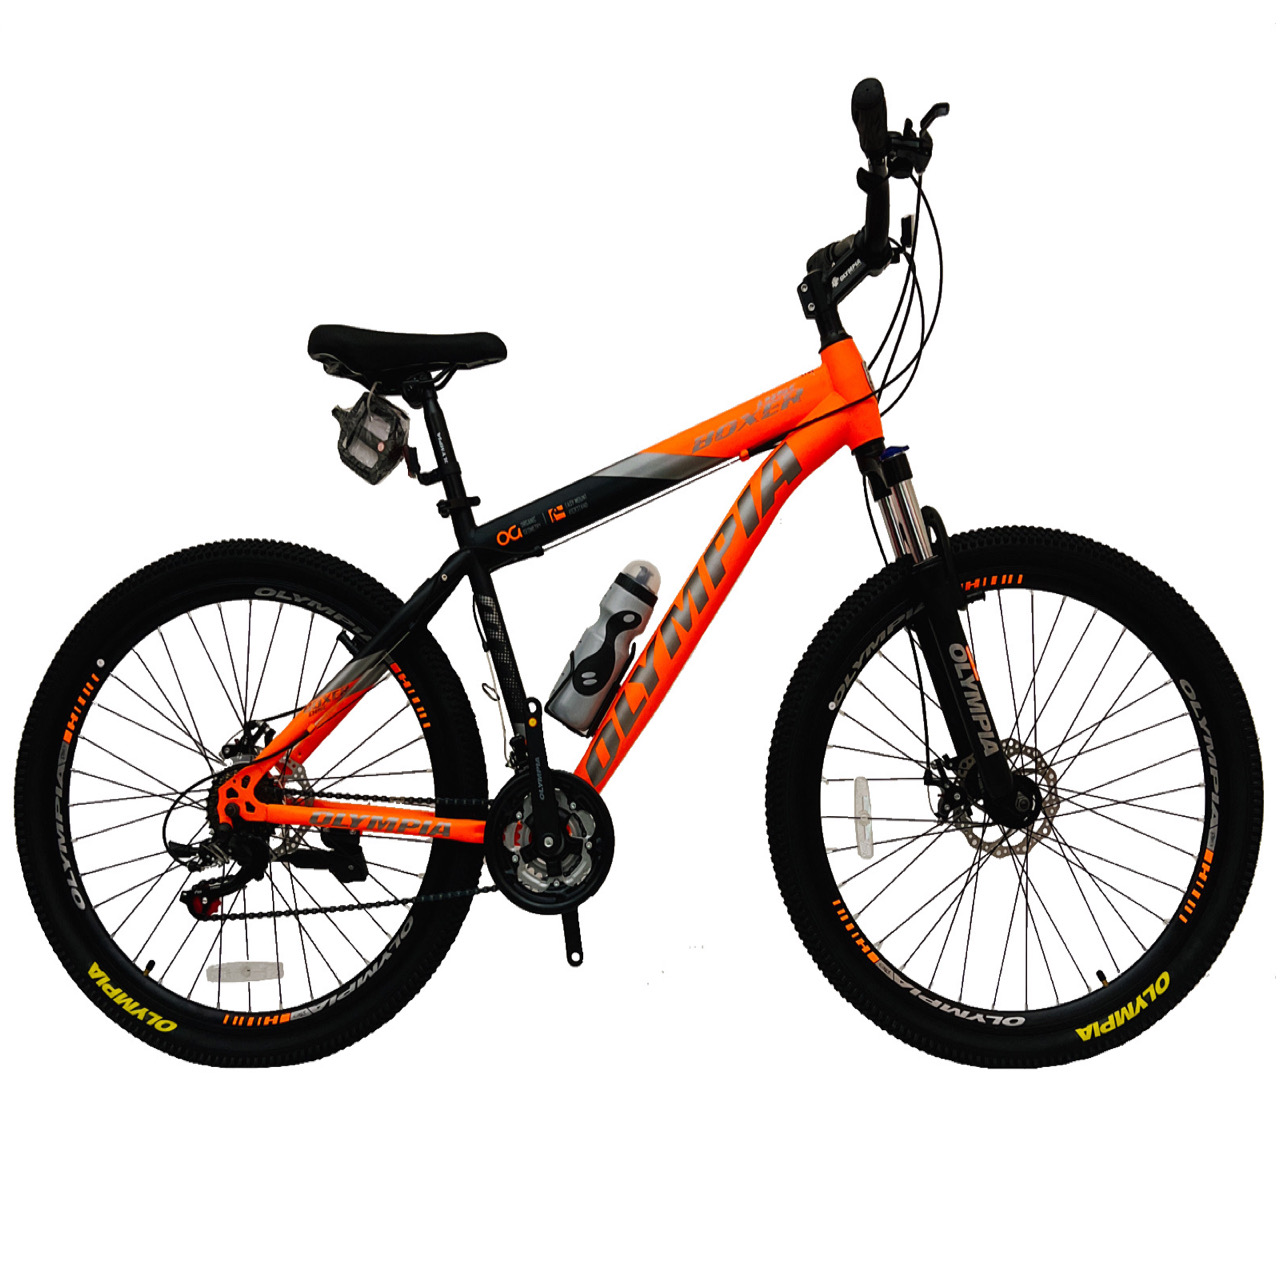 نکته خرید - قیمت روز دوچرخه کوهستان المپیا مدل BOXER کد دیسکی سایز 27.5 خرید